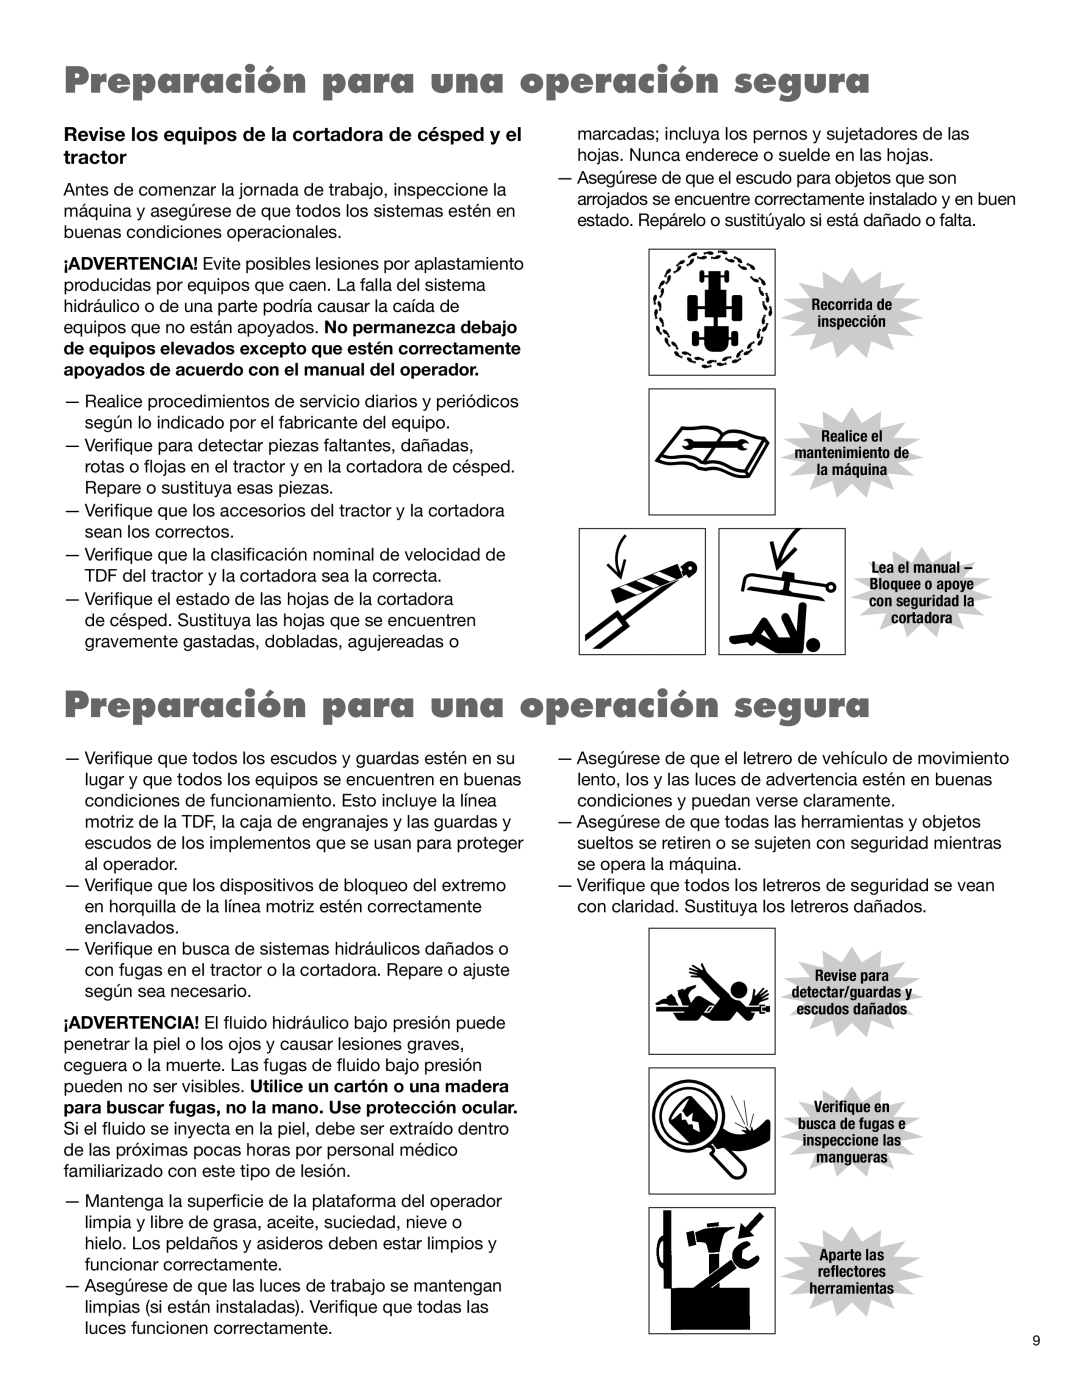 Alamo 1900 manual Preparación para una operación segura, Recorrida de inspección Realice el, mantenimiento de la máquina 